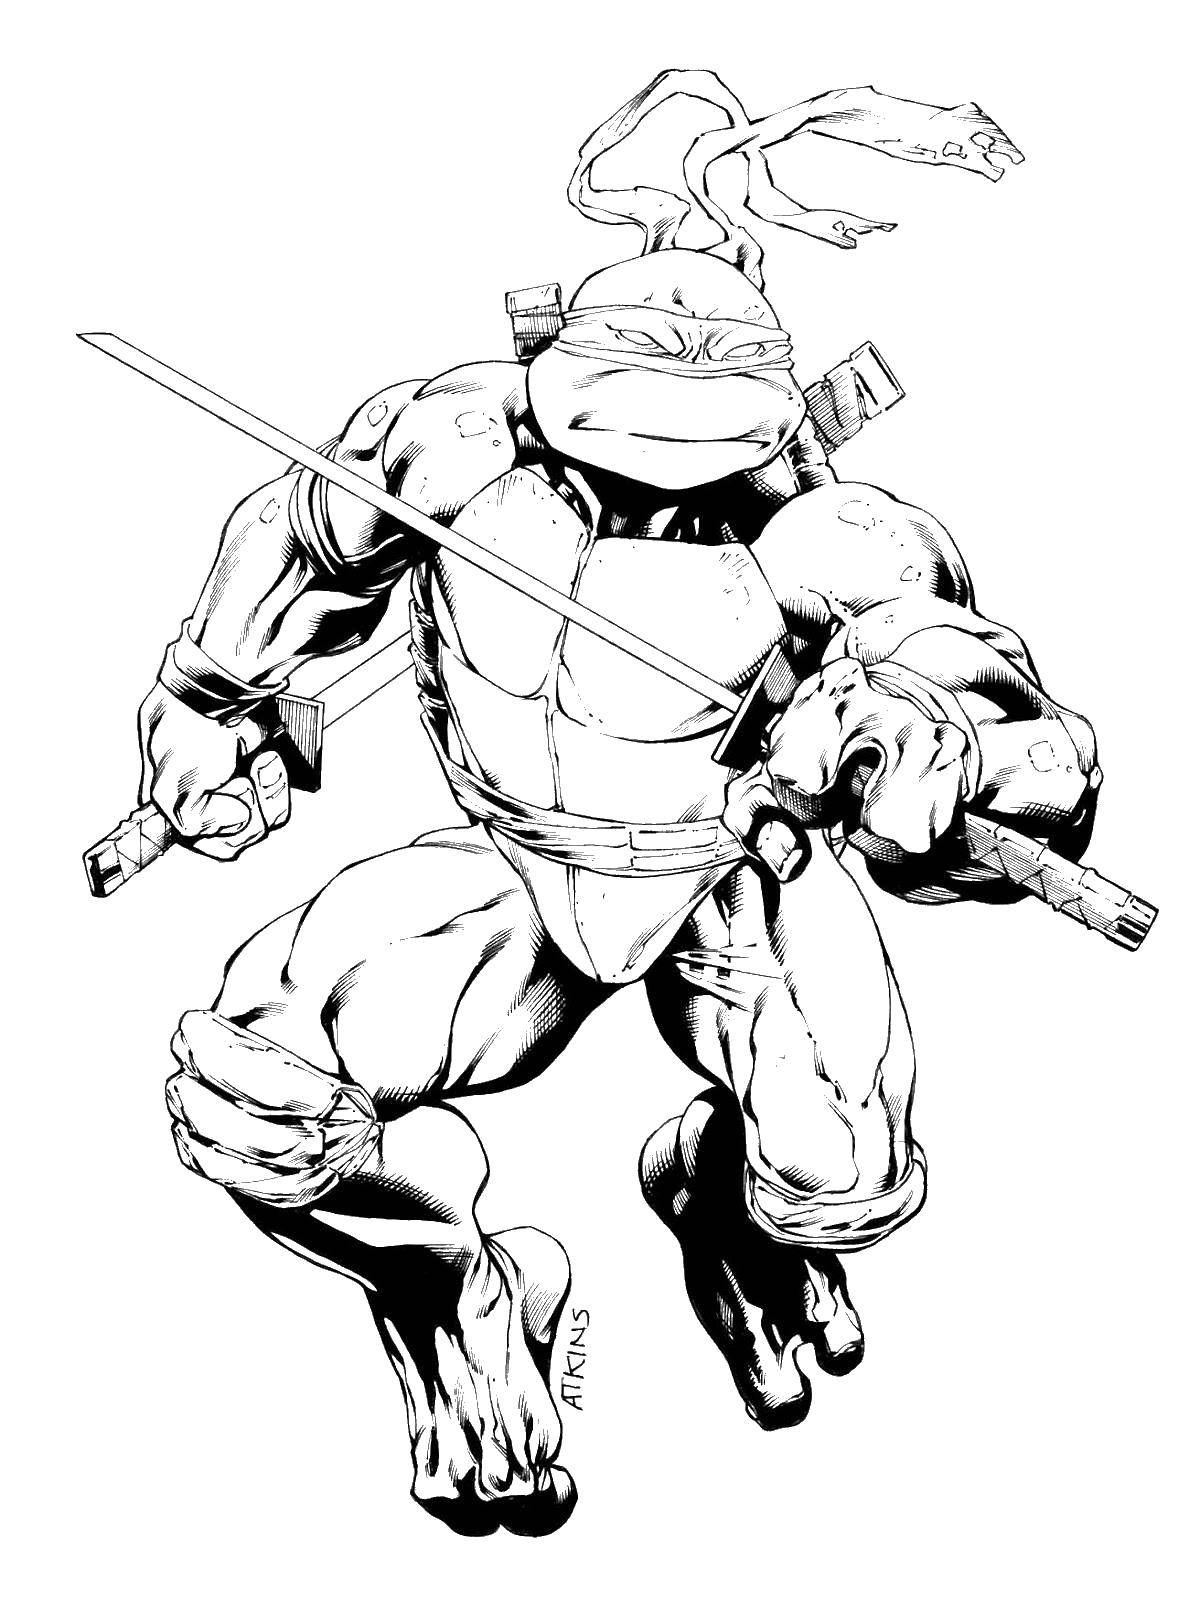 Coloring Leonardo with sword. Category teenage mutant ninja turtles. Tags:  the turtle, Leonardo, sword.